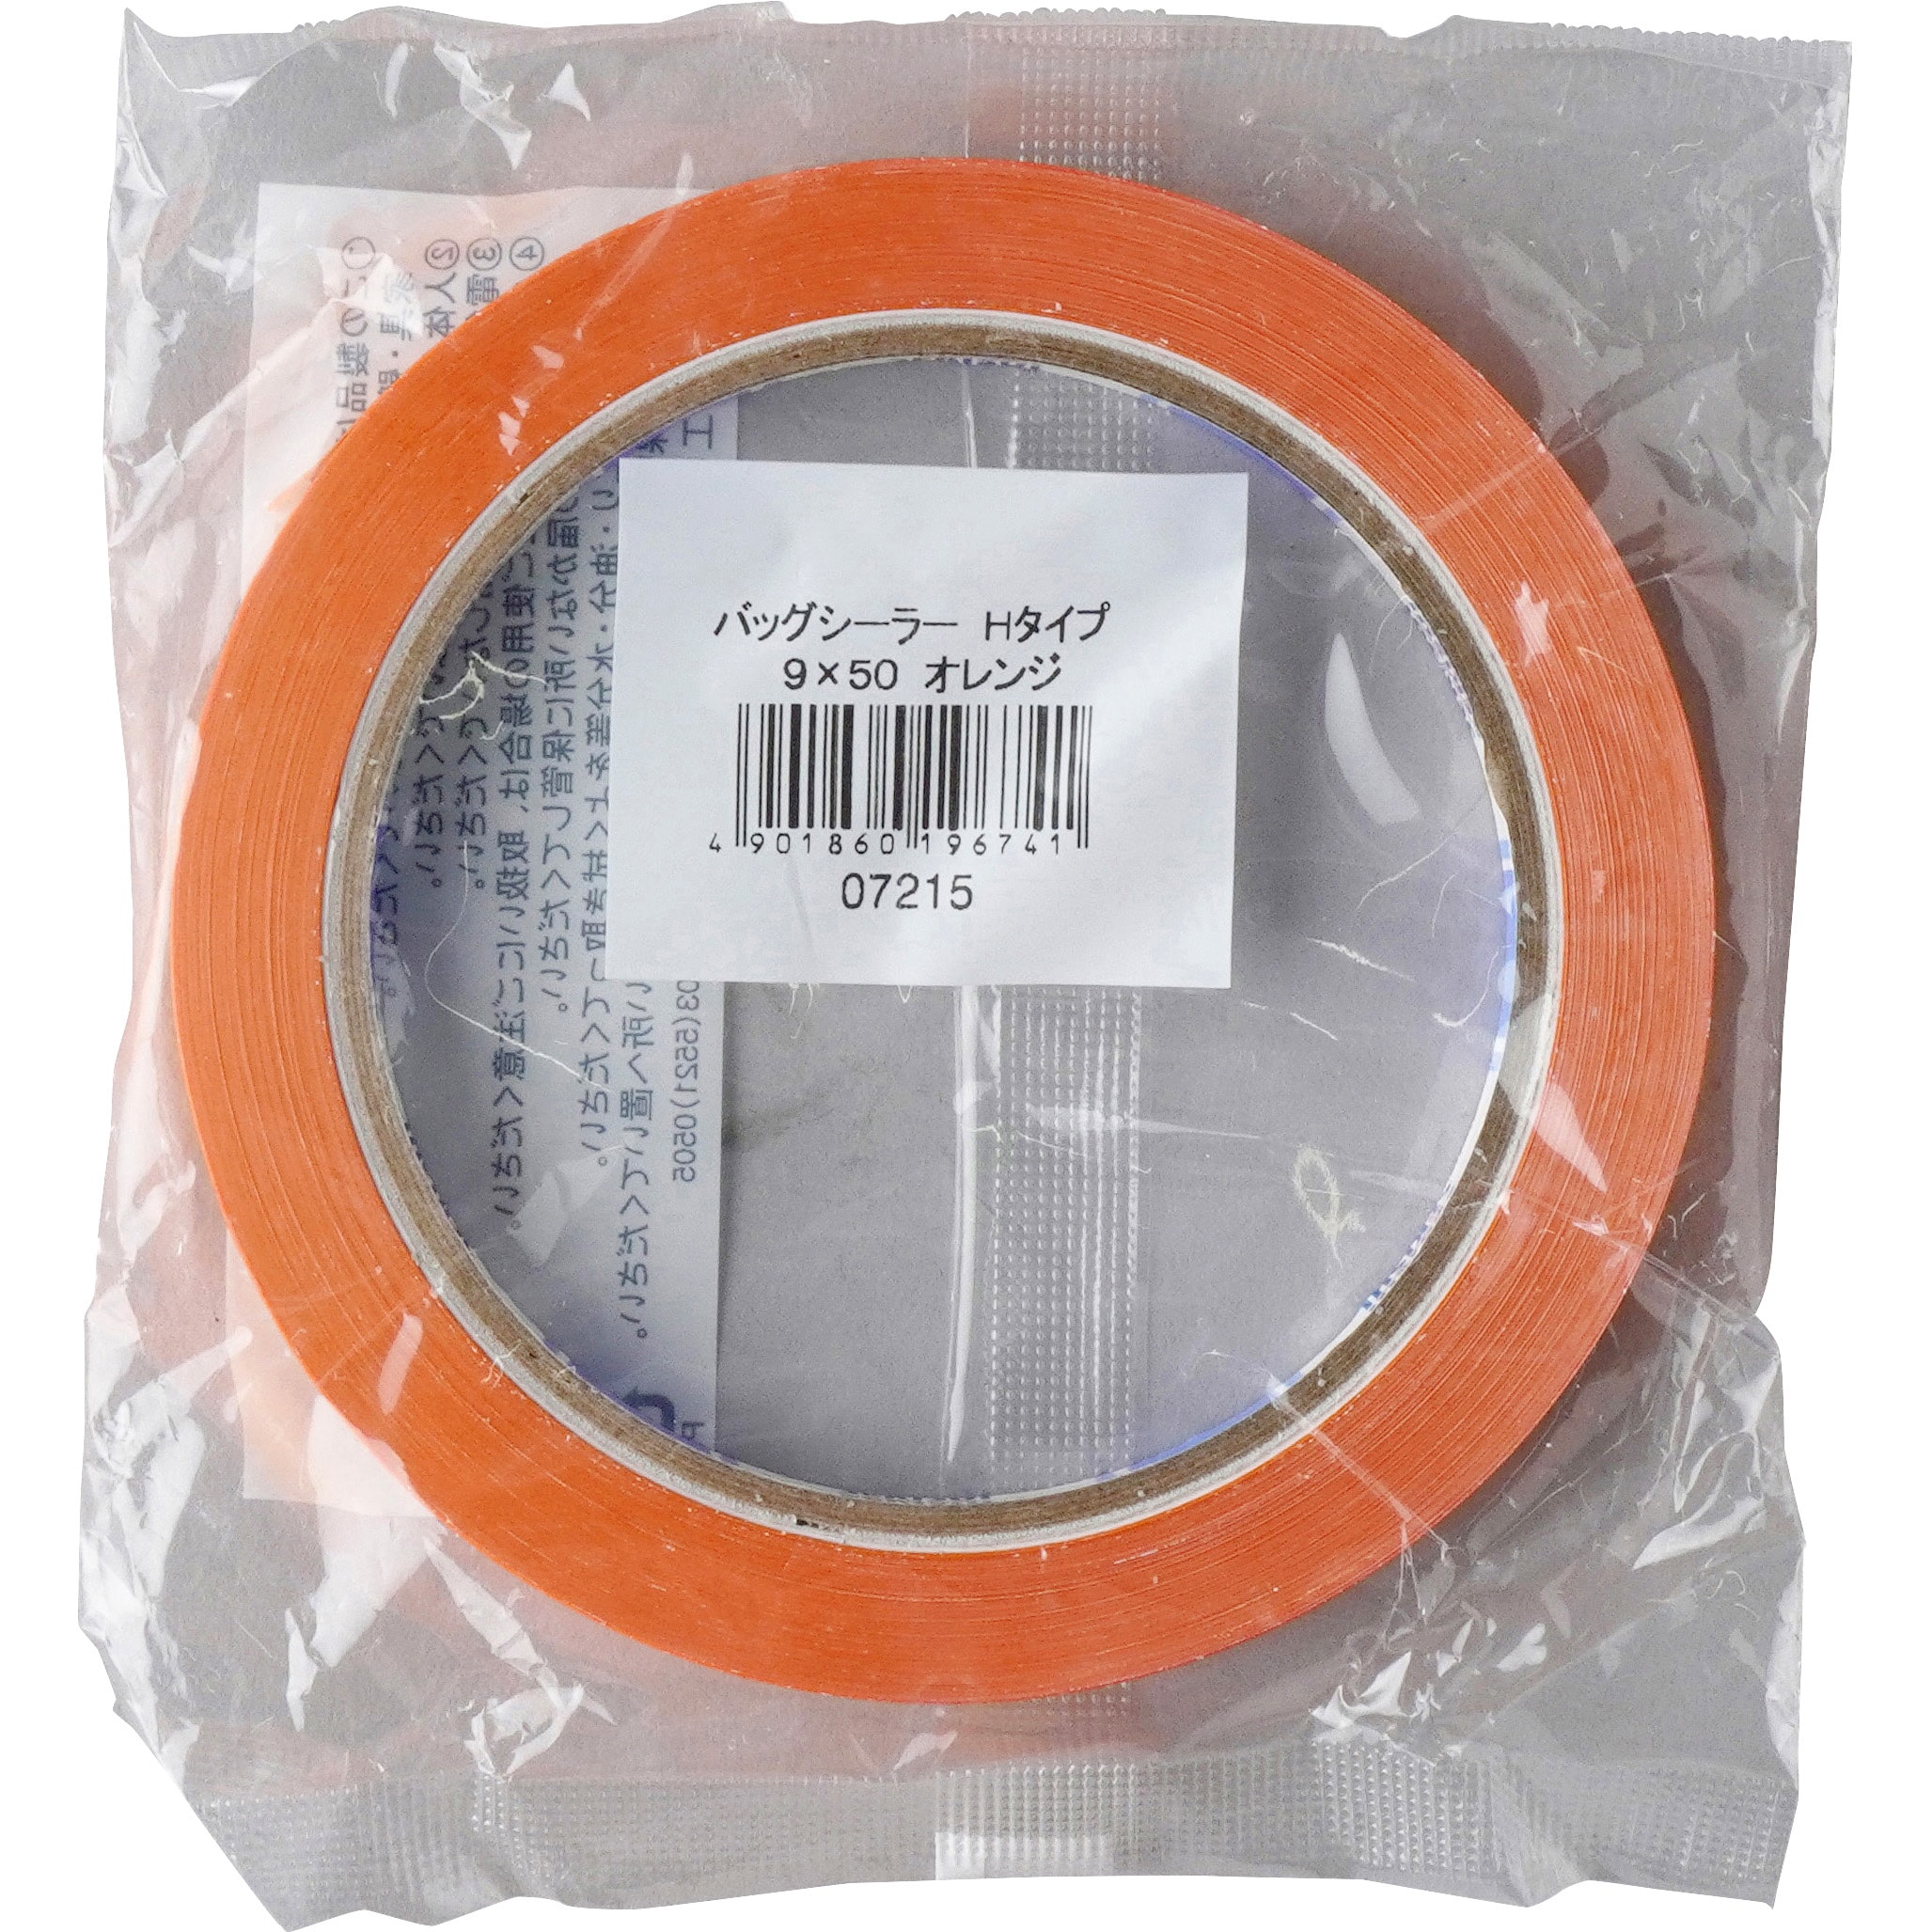 ケース販売積水化学工業 バッグシーラーテープ Hタイプ 9×50 チェック赤 002000022 1ケース(200巻入) - 2